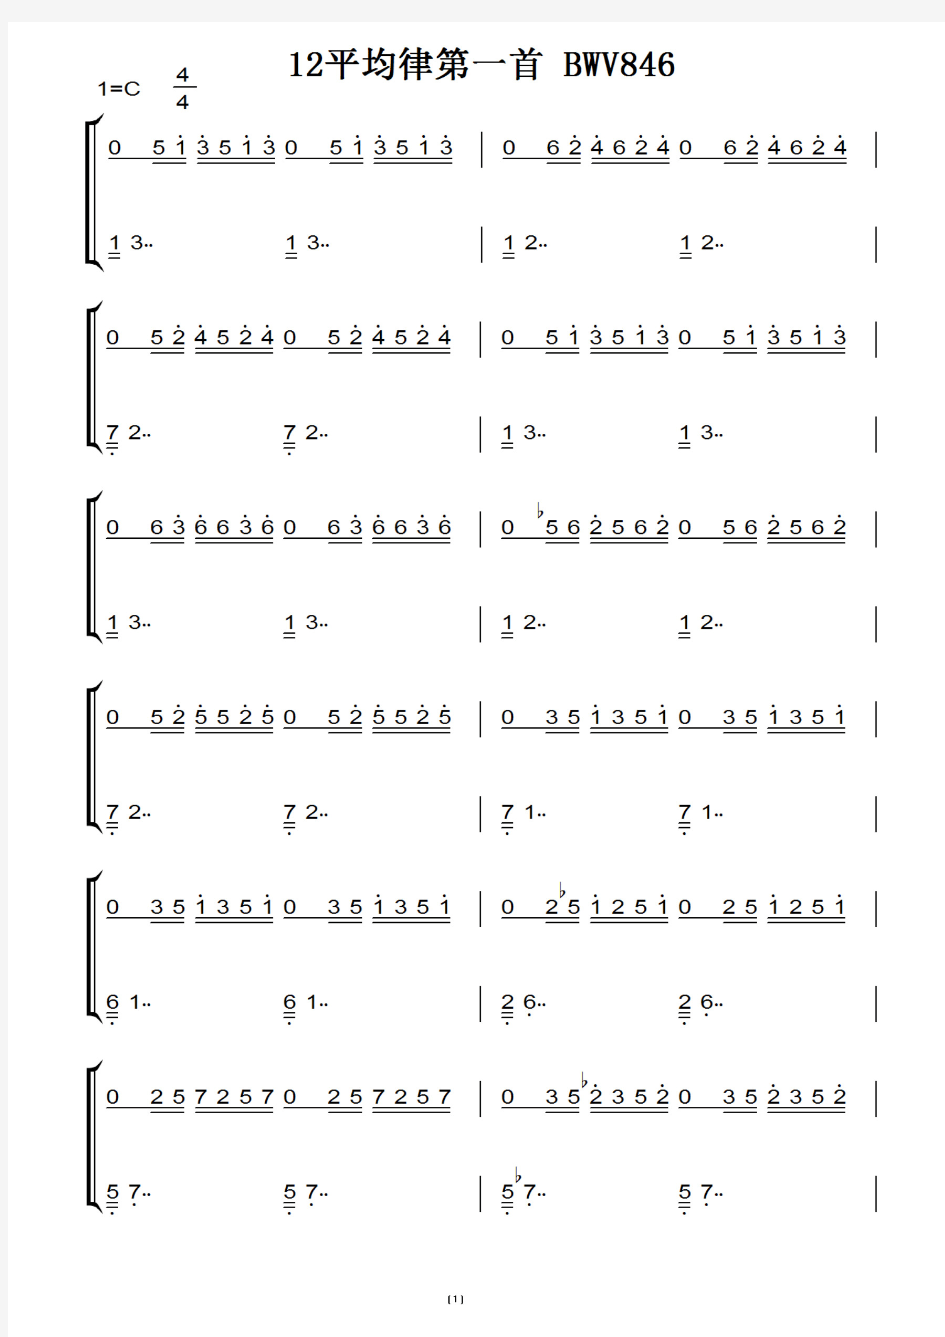 巴赫-BWV846-12平均律第一首 钢琴谱 钢琴双手简谱